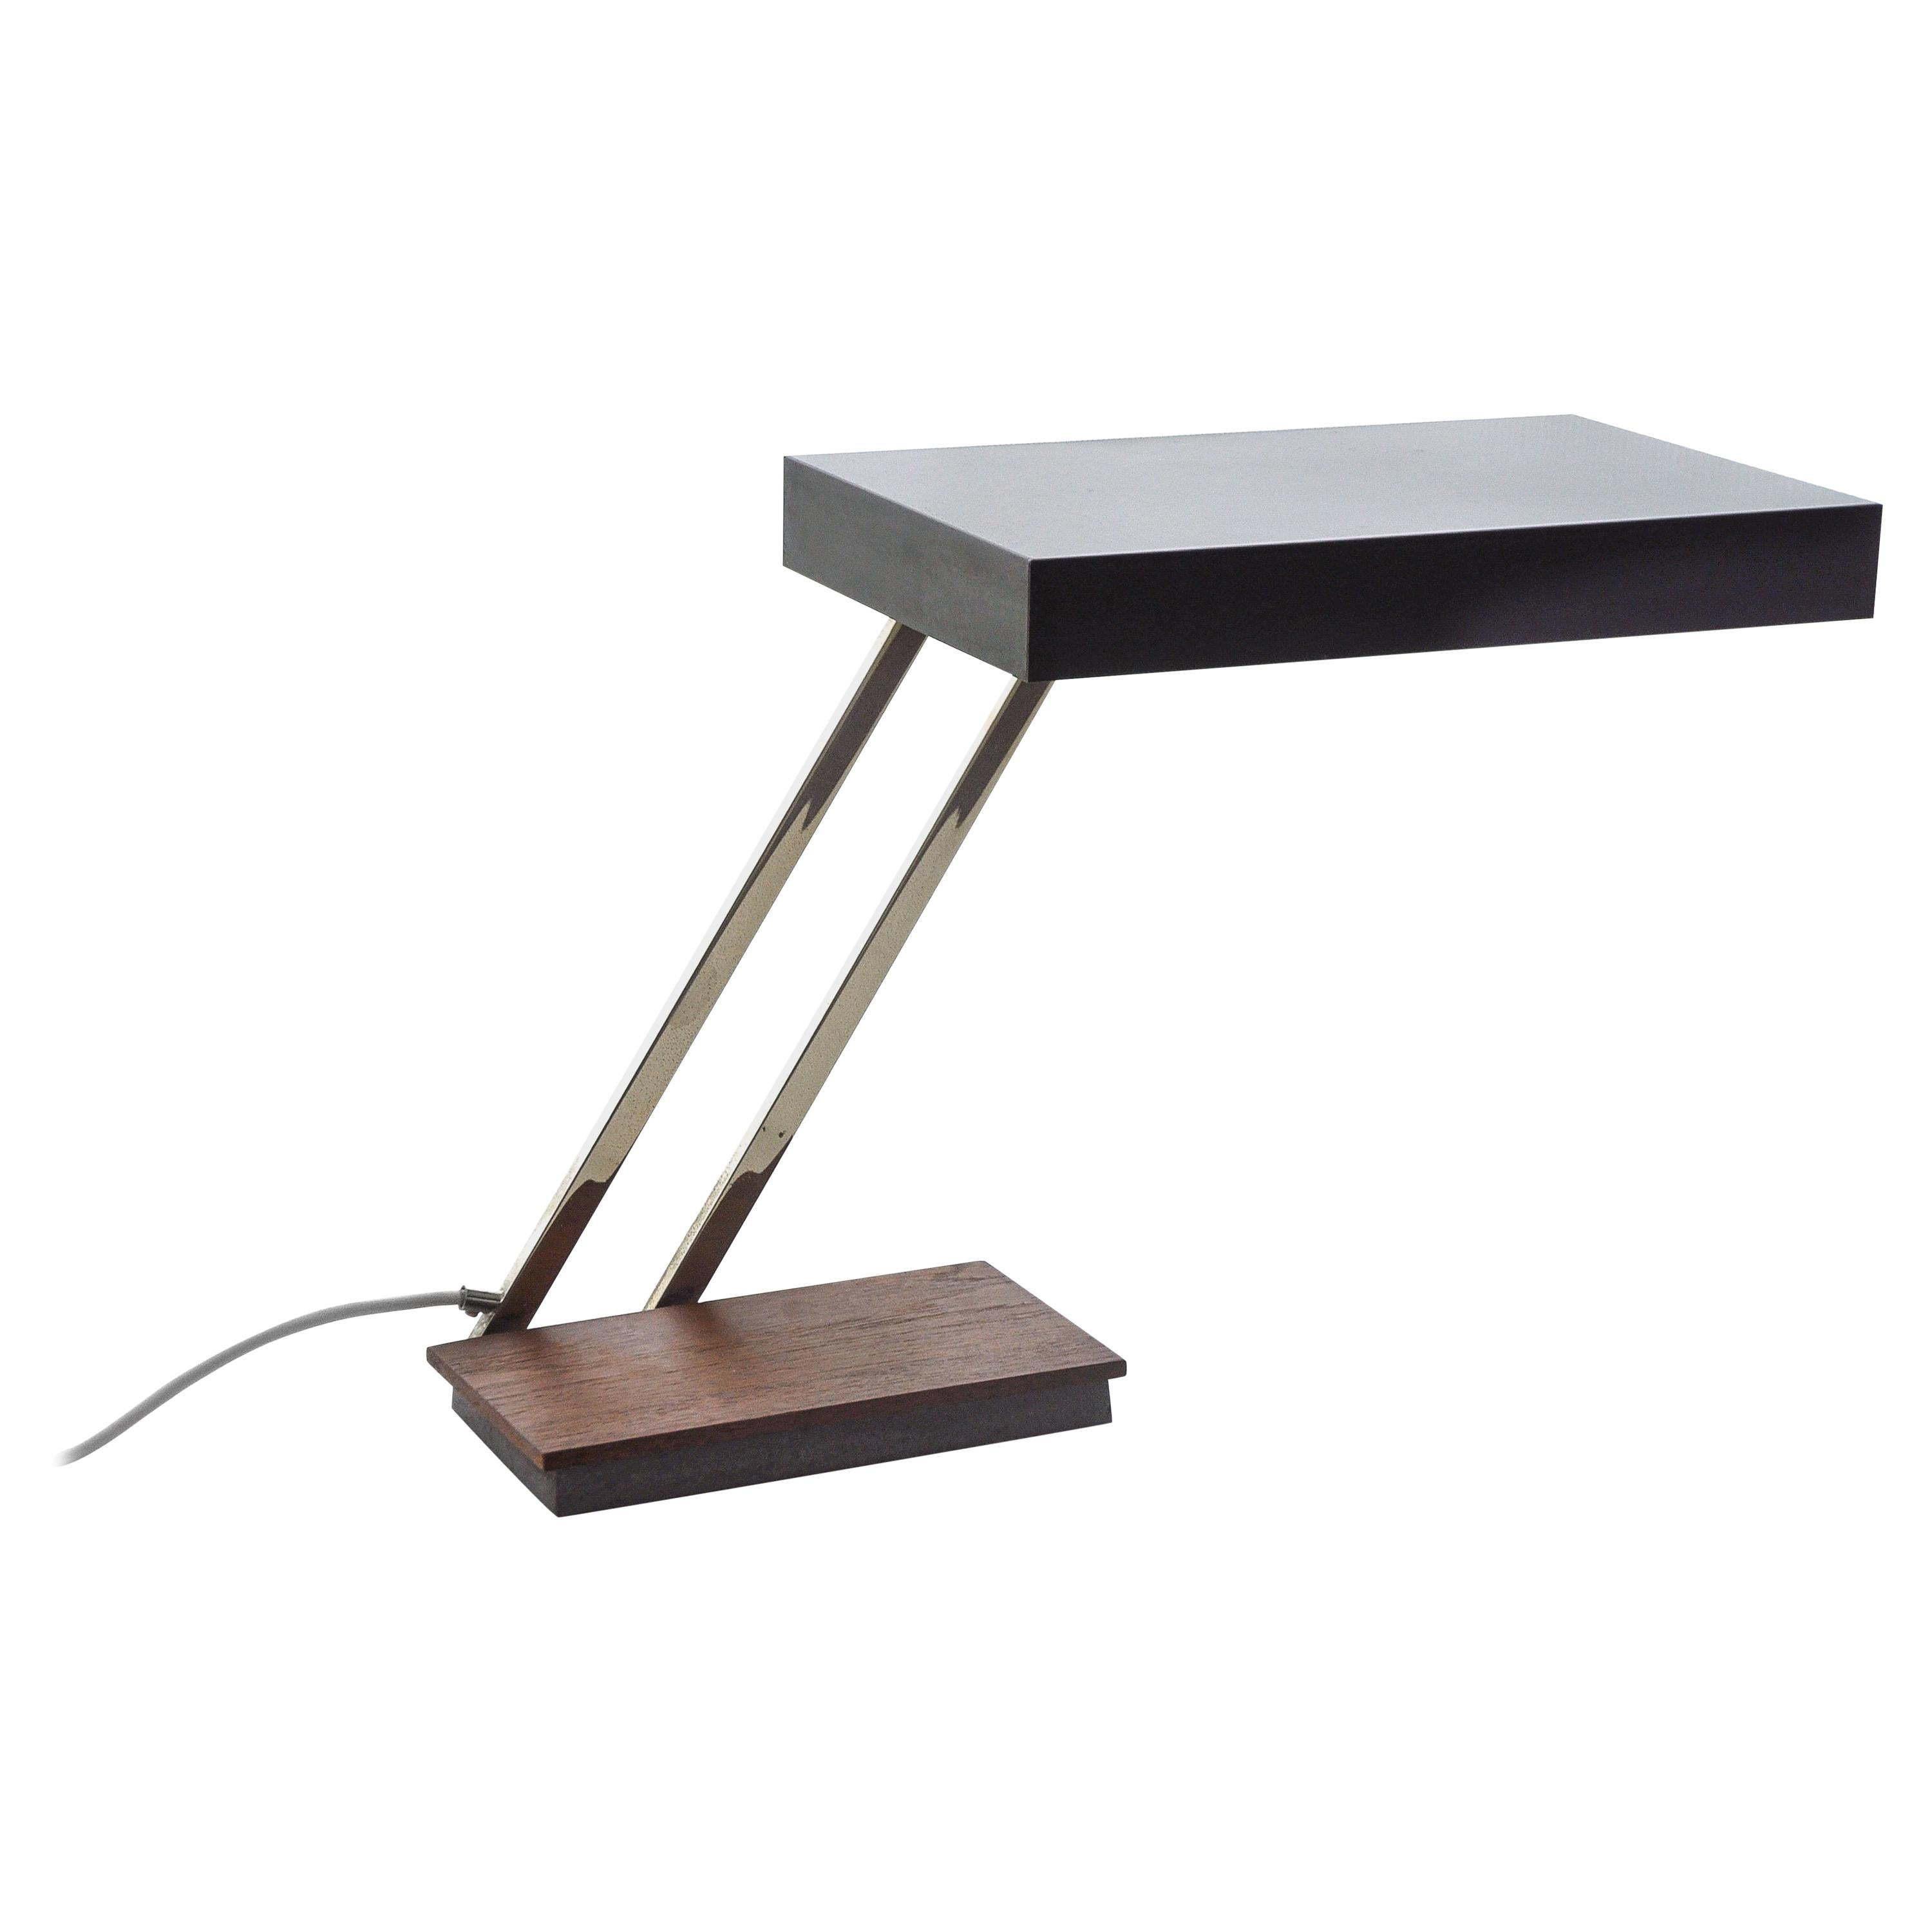 Modernist Teak Table Lamp by Kaiser Idell - Mod. 6875, 1960s For Sale